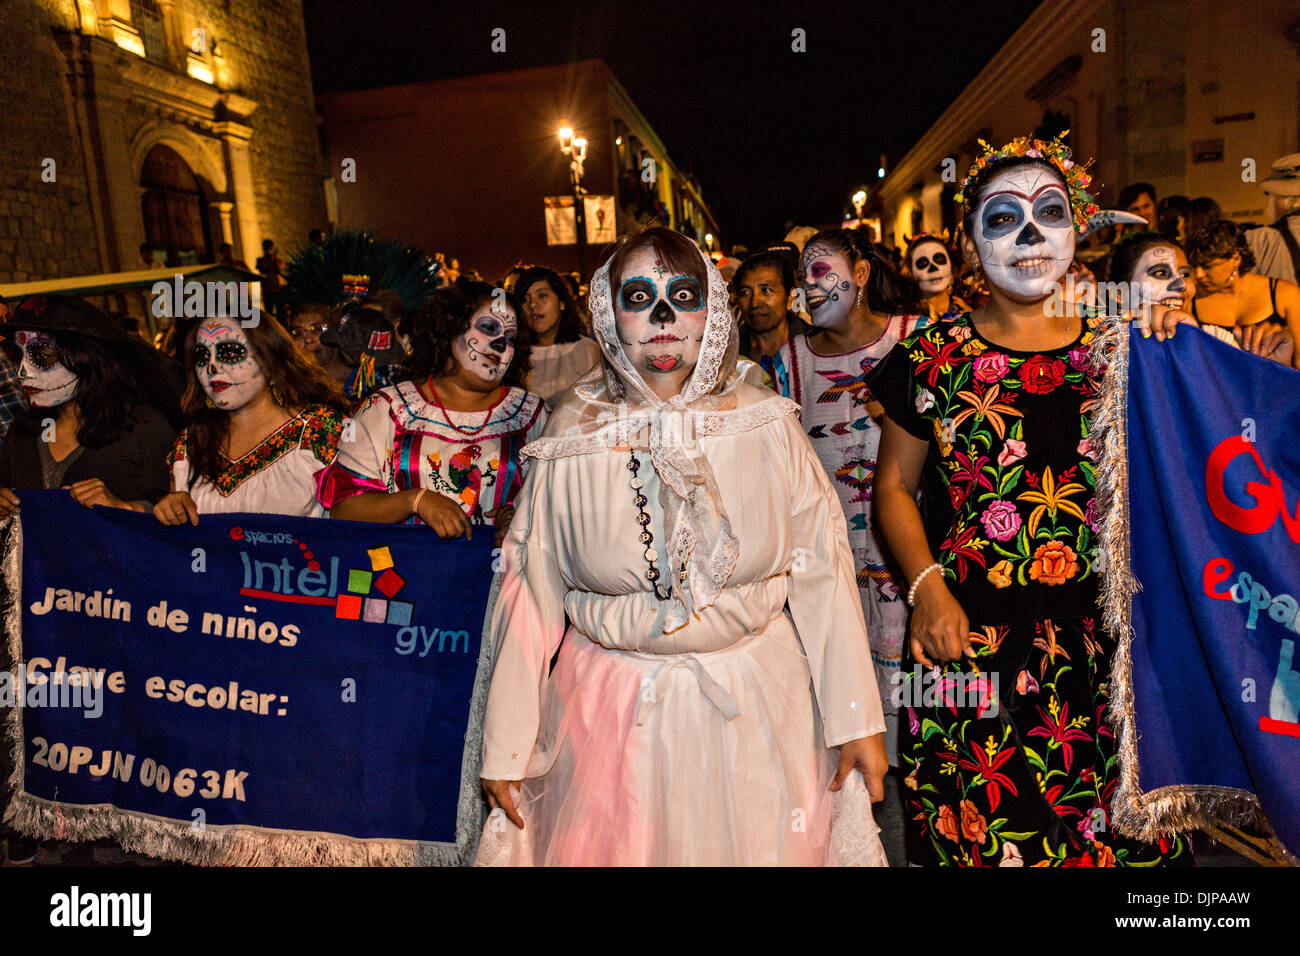 La Calavera Catrina celebrando el Día de los muertos el 1 de noviembre de 2013 en Oaxaca, México. Foto de stock